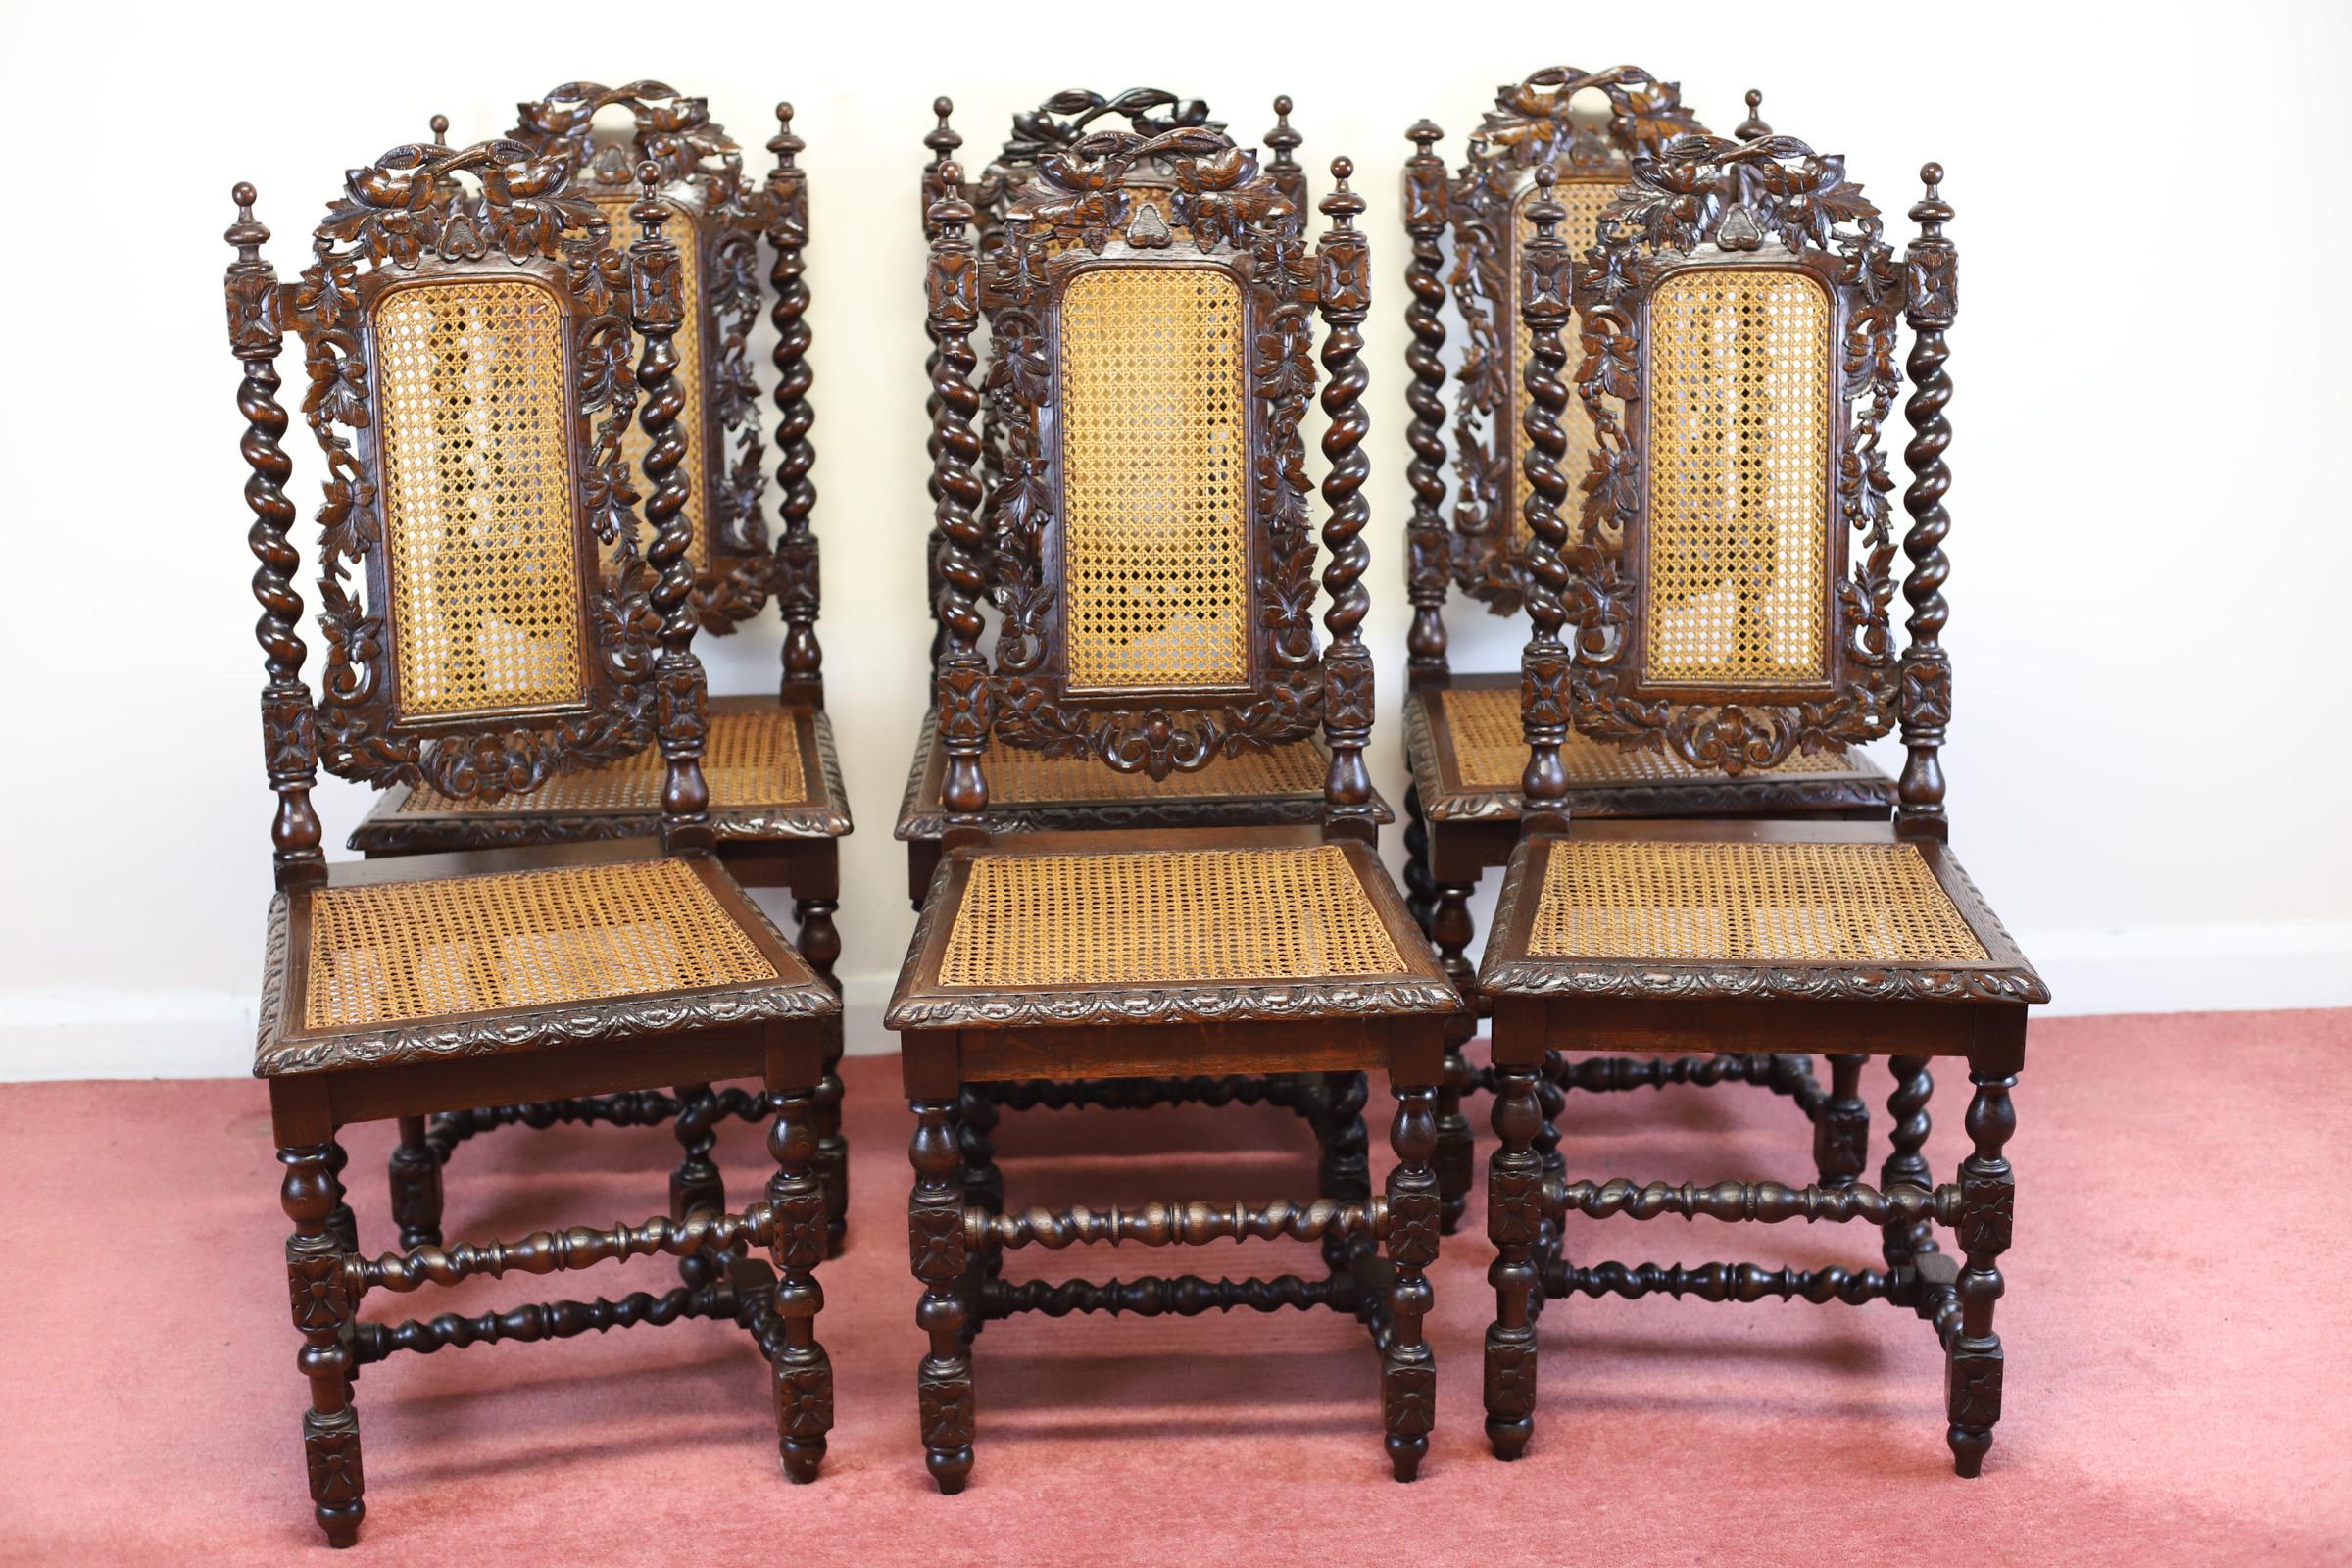 Ensemble très décoratif de six chaises de salle à manger antiques en chêne jacobéen de l'époque victorienne, datant d'environ 1870. Elles ont des dossiers sculptés avec des panneaux centraux sculptés et percés et une barre de dossier sculptée